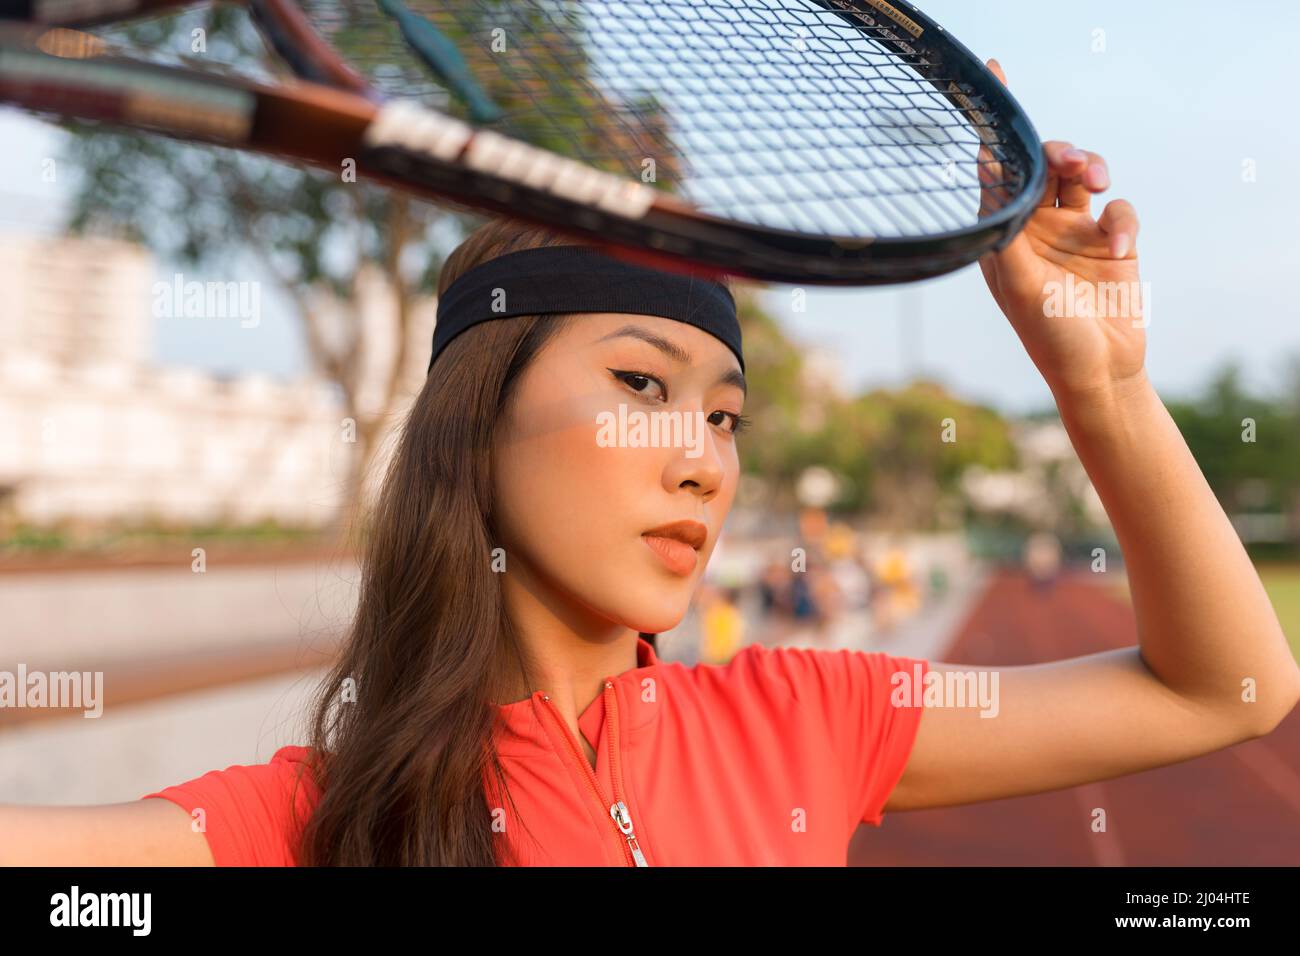 Asiatische junge Frau mit schwarzem Stirnband, die auf dem Tennisplatz steht und einen Tennisschläger hält. Hochwertige Fotos Stockfoto